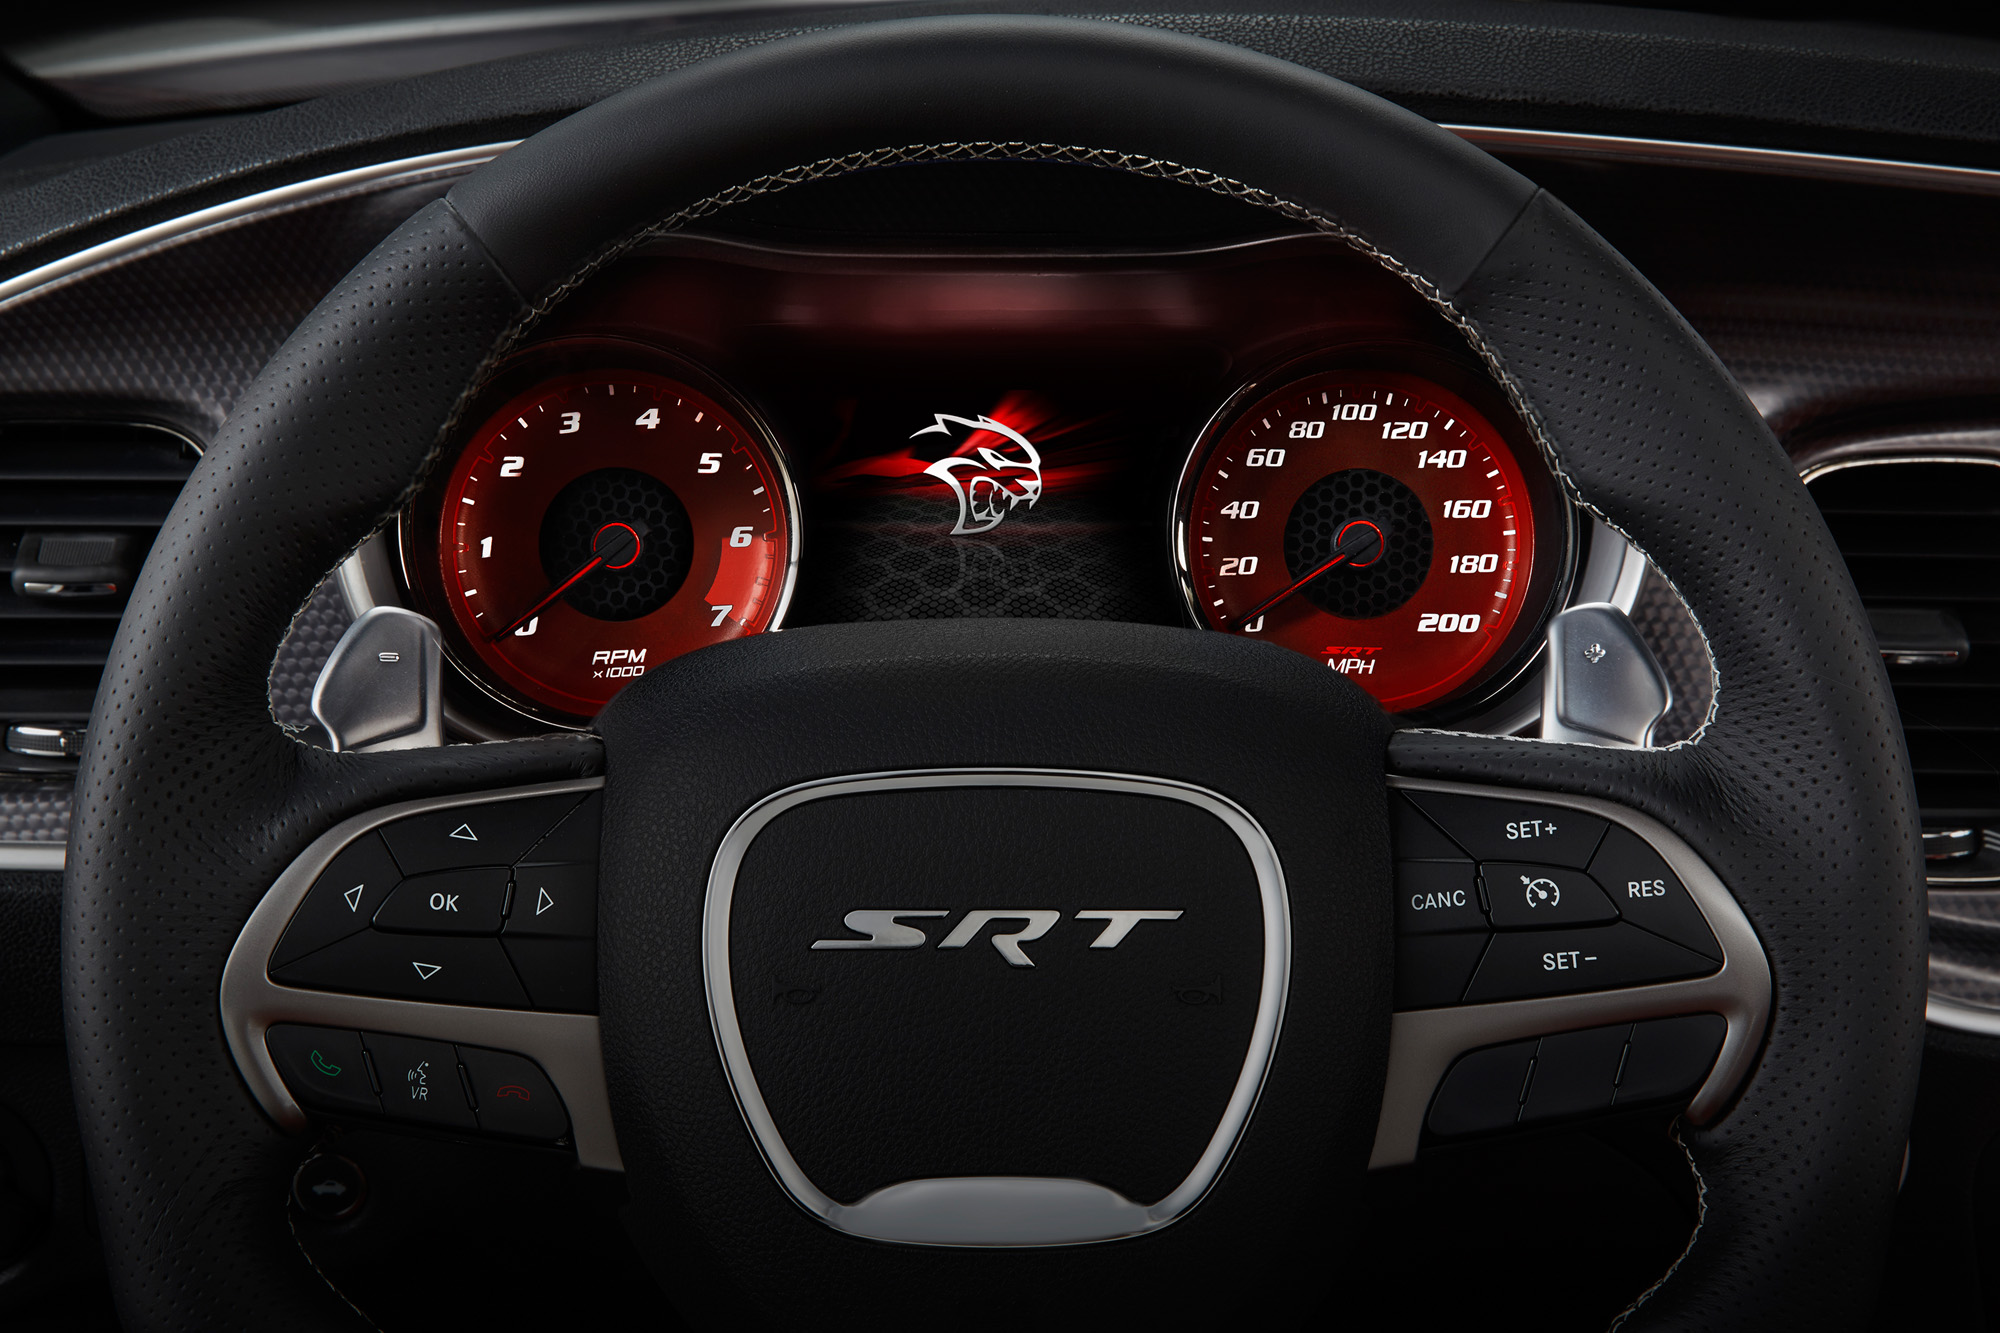 2015 Dodge Charger SRT Hellcat - start-up screen